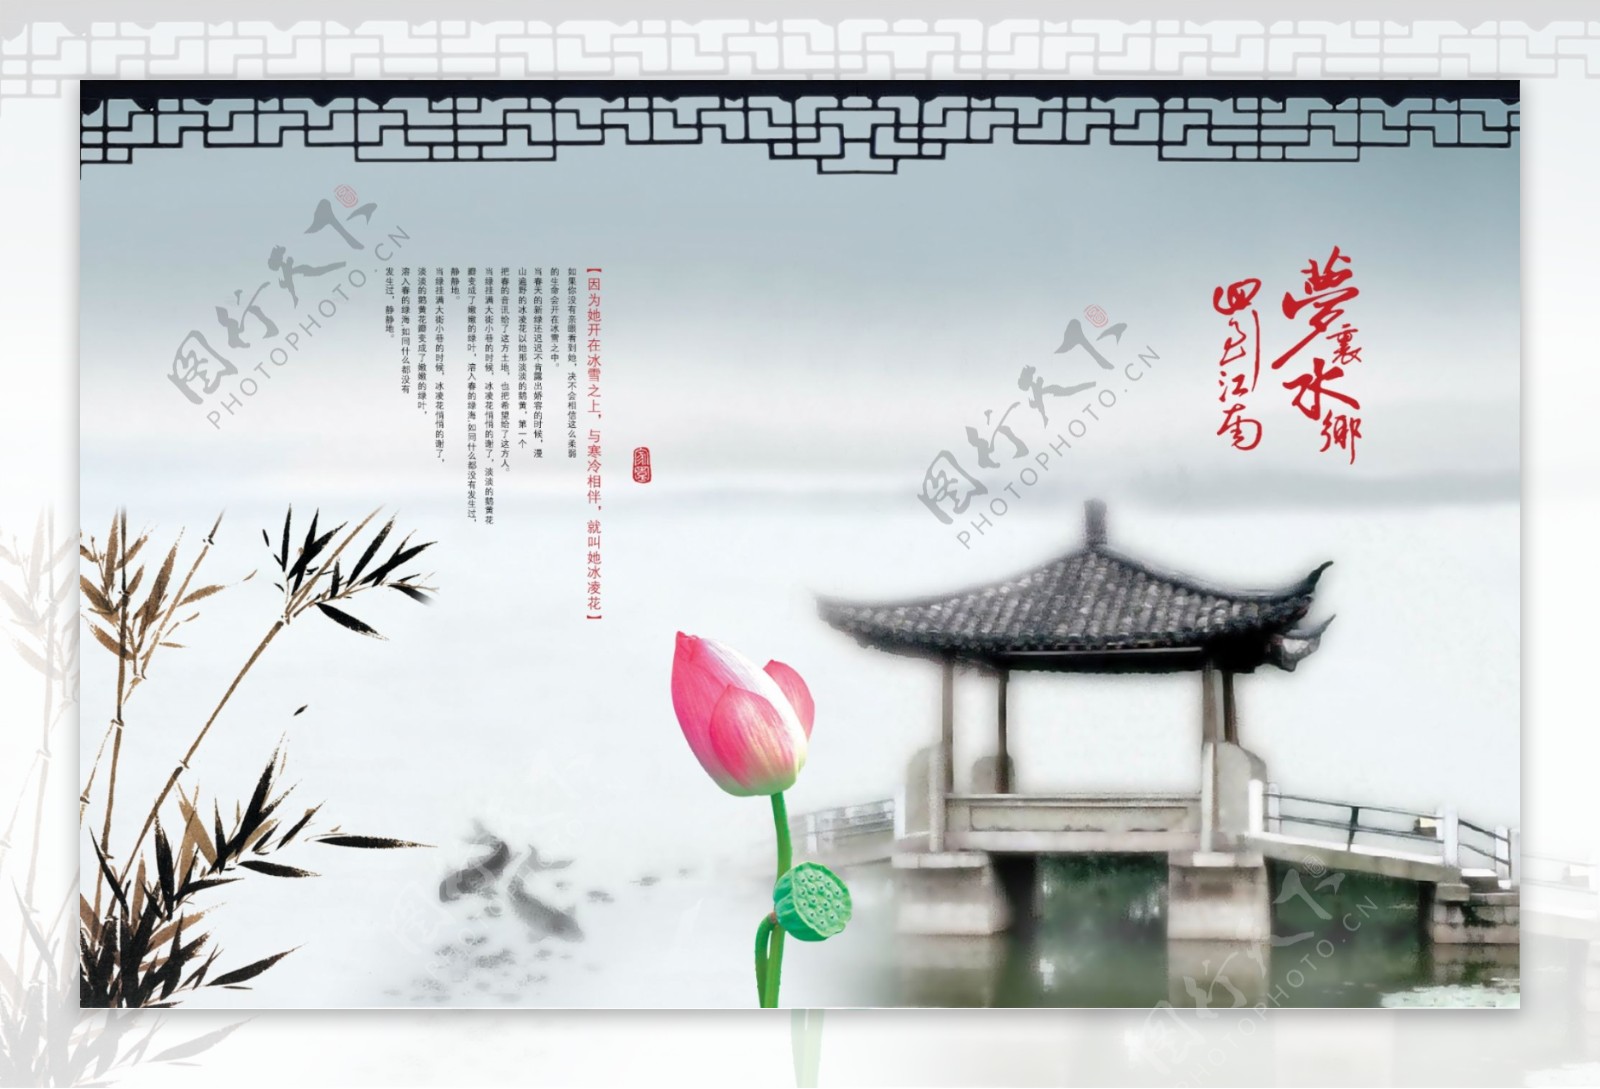 中国风水榭楼台荷花为伴图片